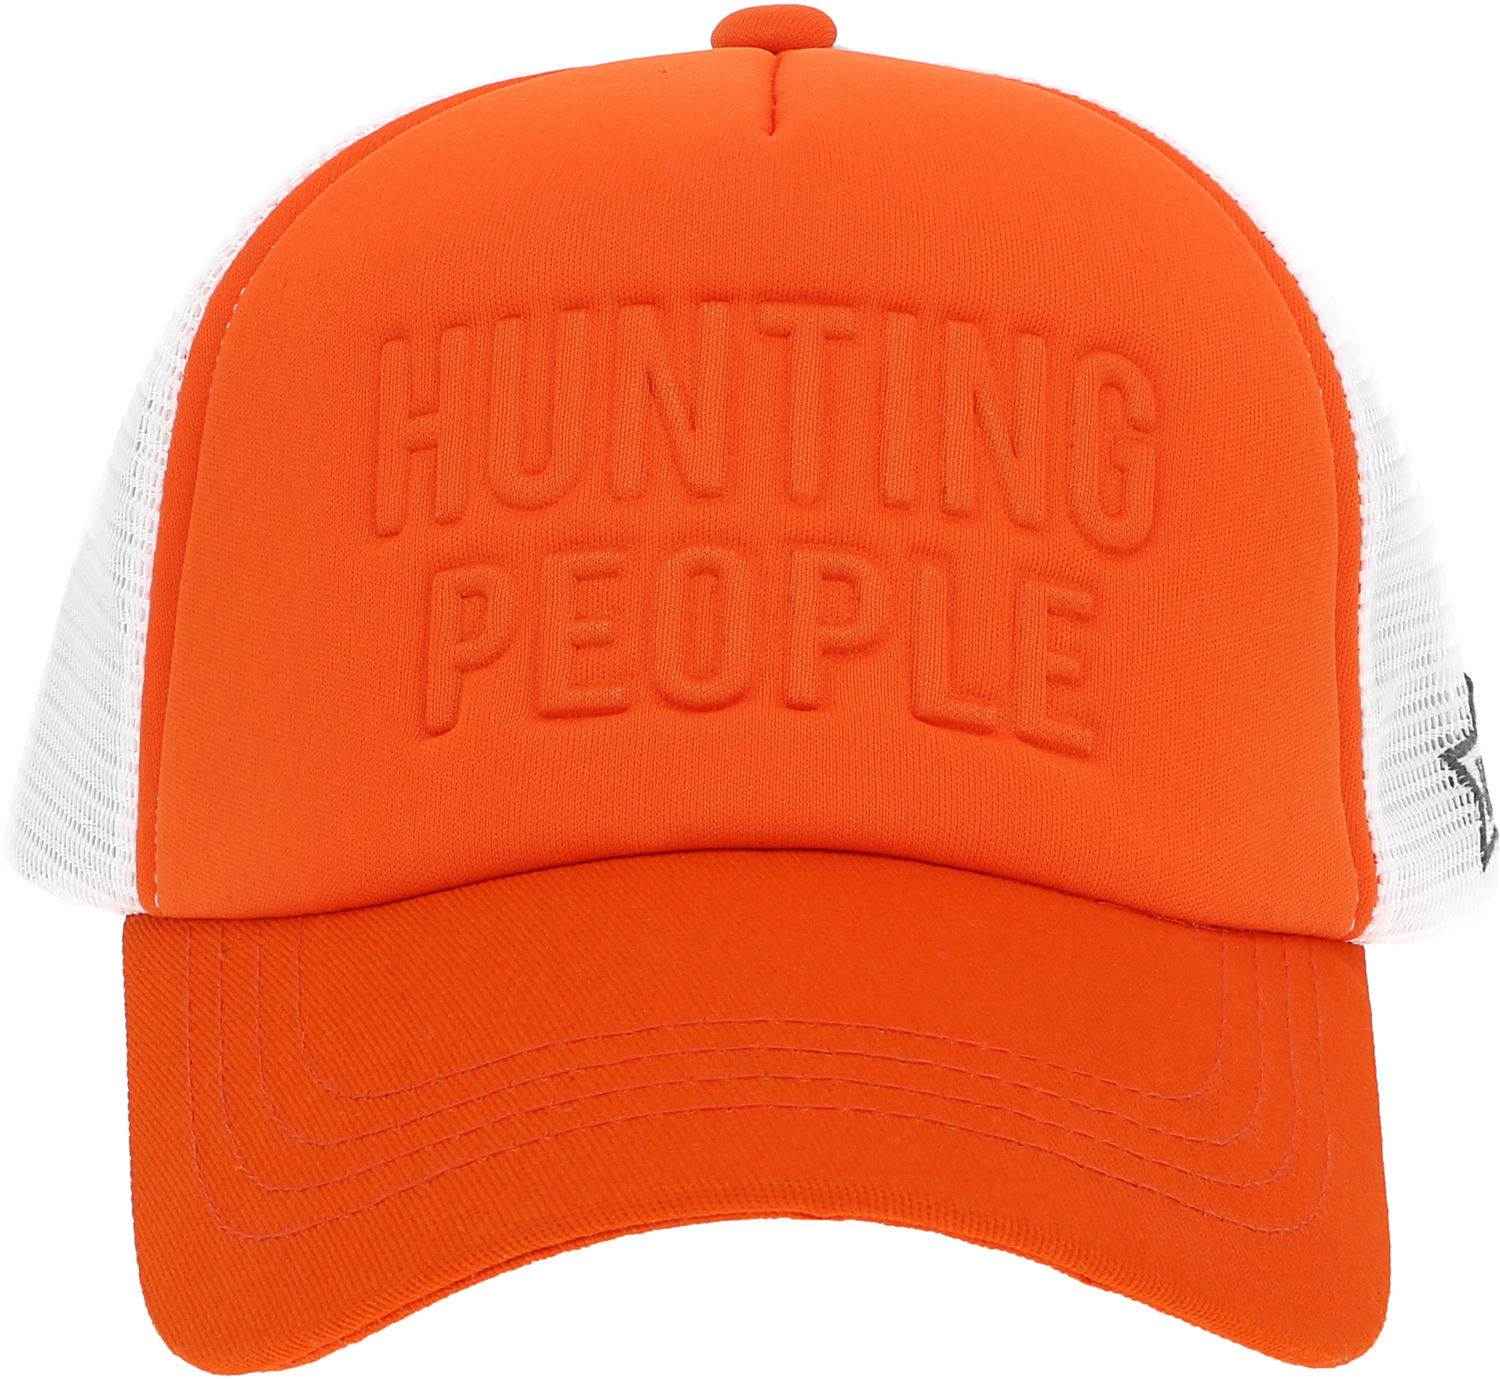 Hunting People by We People - Hunting People - Adjustable Orange Neoprene Mesh Hat